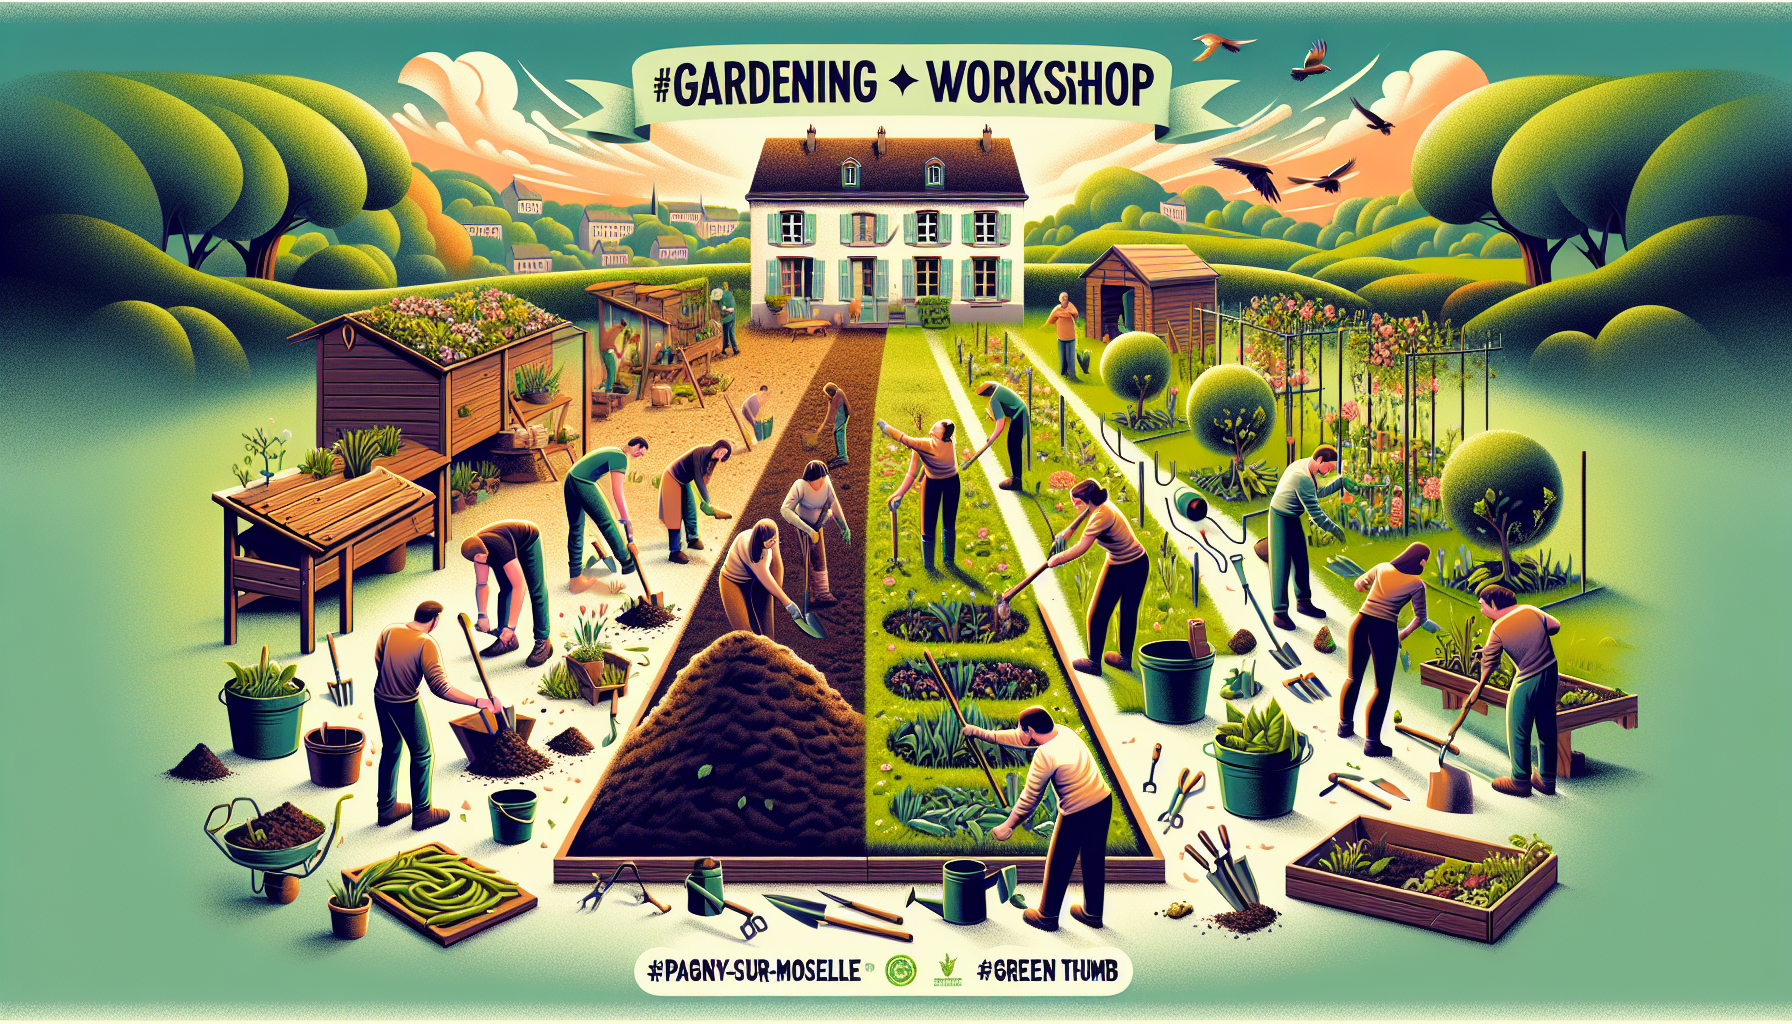 apprenez à améliorer votre jardin en utilisant la taille en vert et le compost lors d'un stage et atelier de jardinage à pagny-sur-moselle !